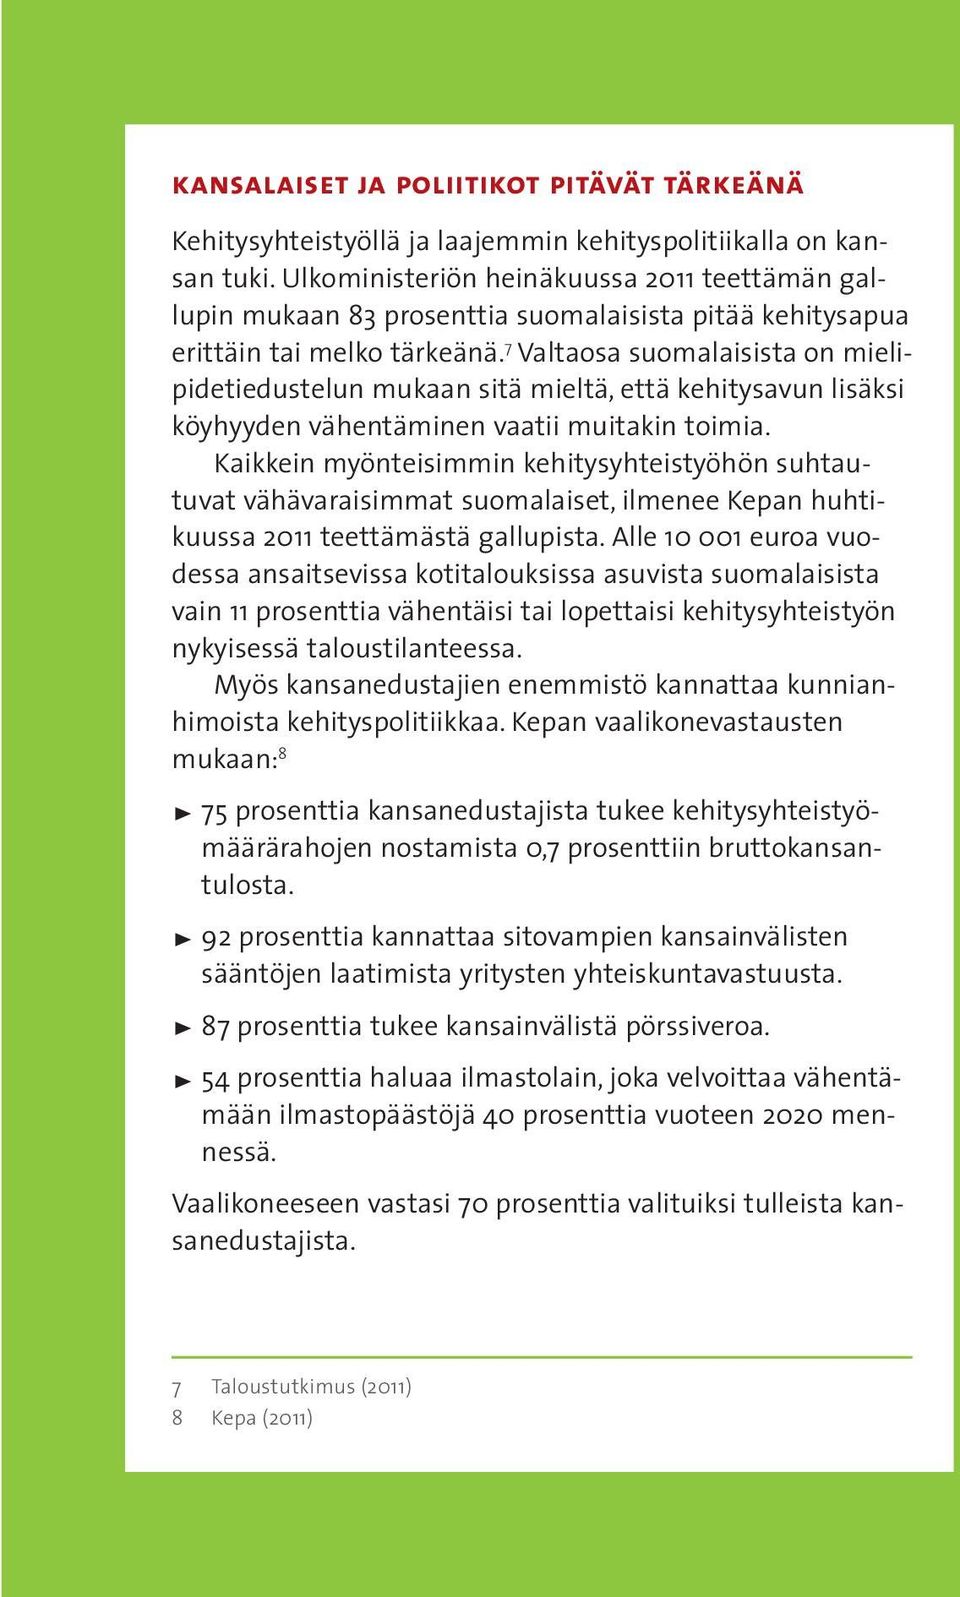 71 Valtaosa suomalaisista on mielipidetiedustelun mukaan sitä mieltä, että kehitysavun lisäksi köyhyyden vähentäminen vaatii muitakin toimia.